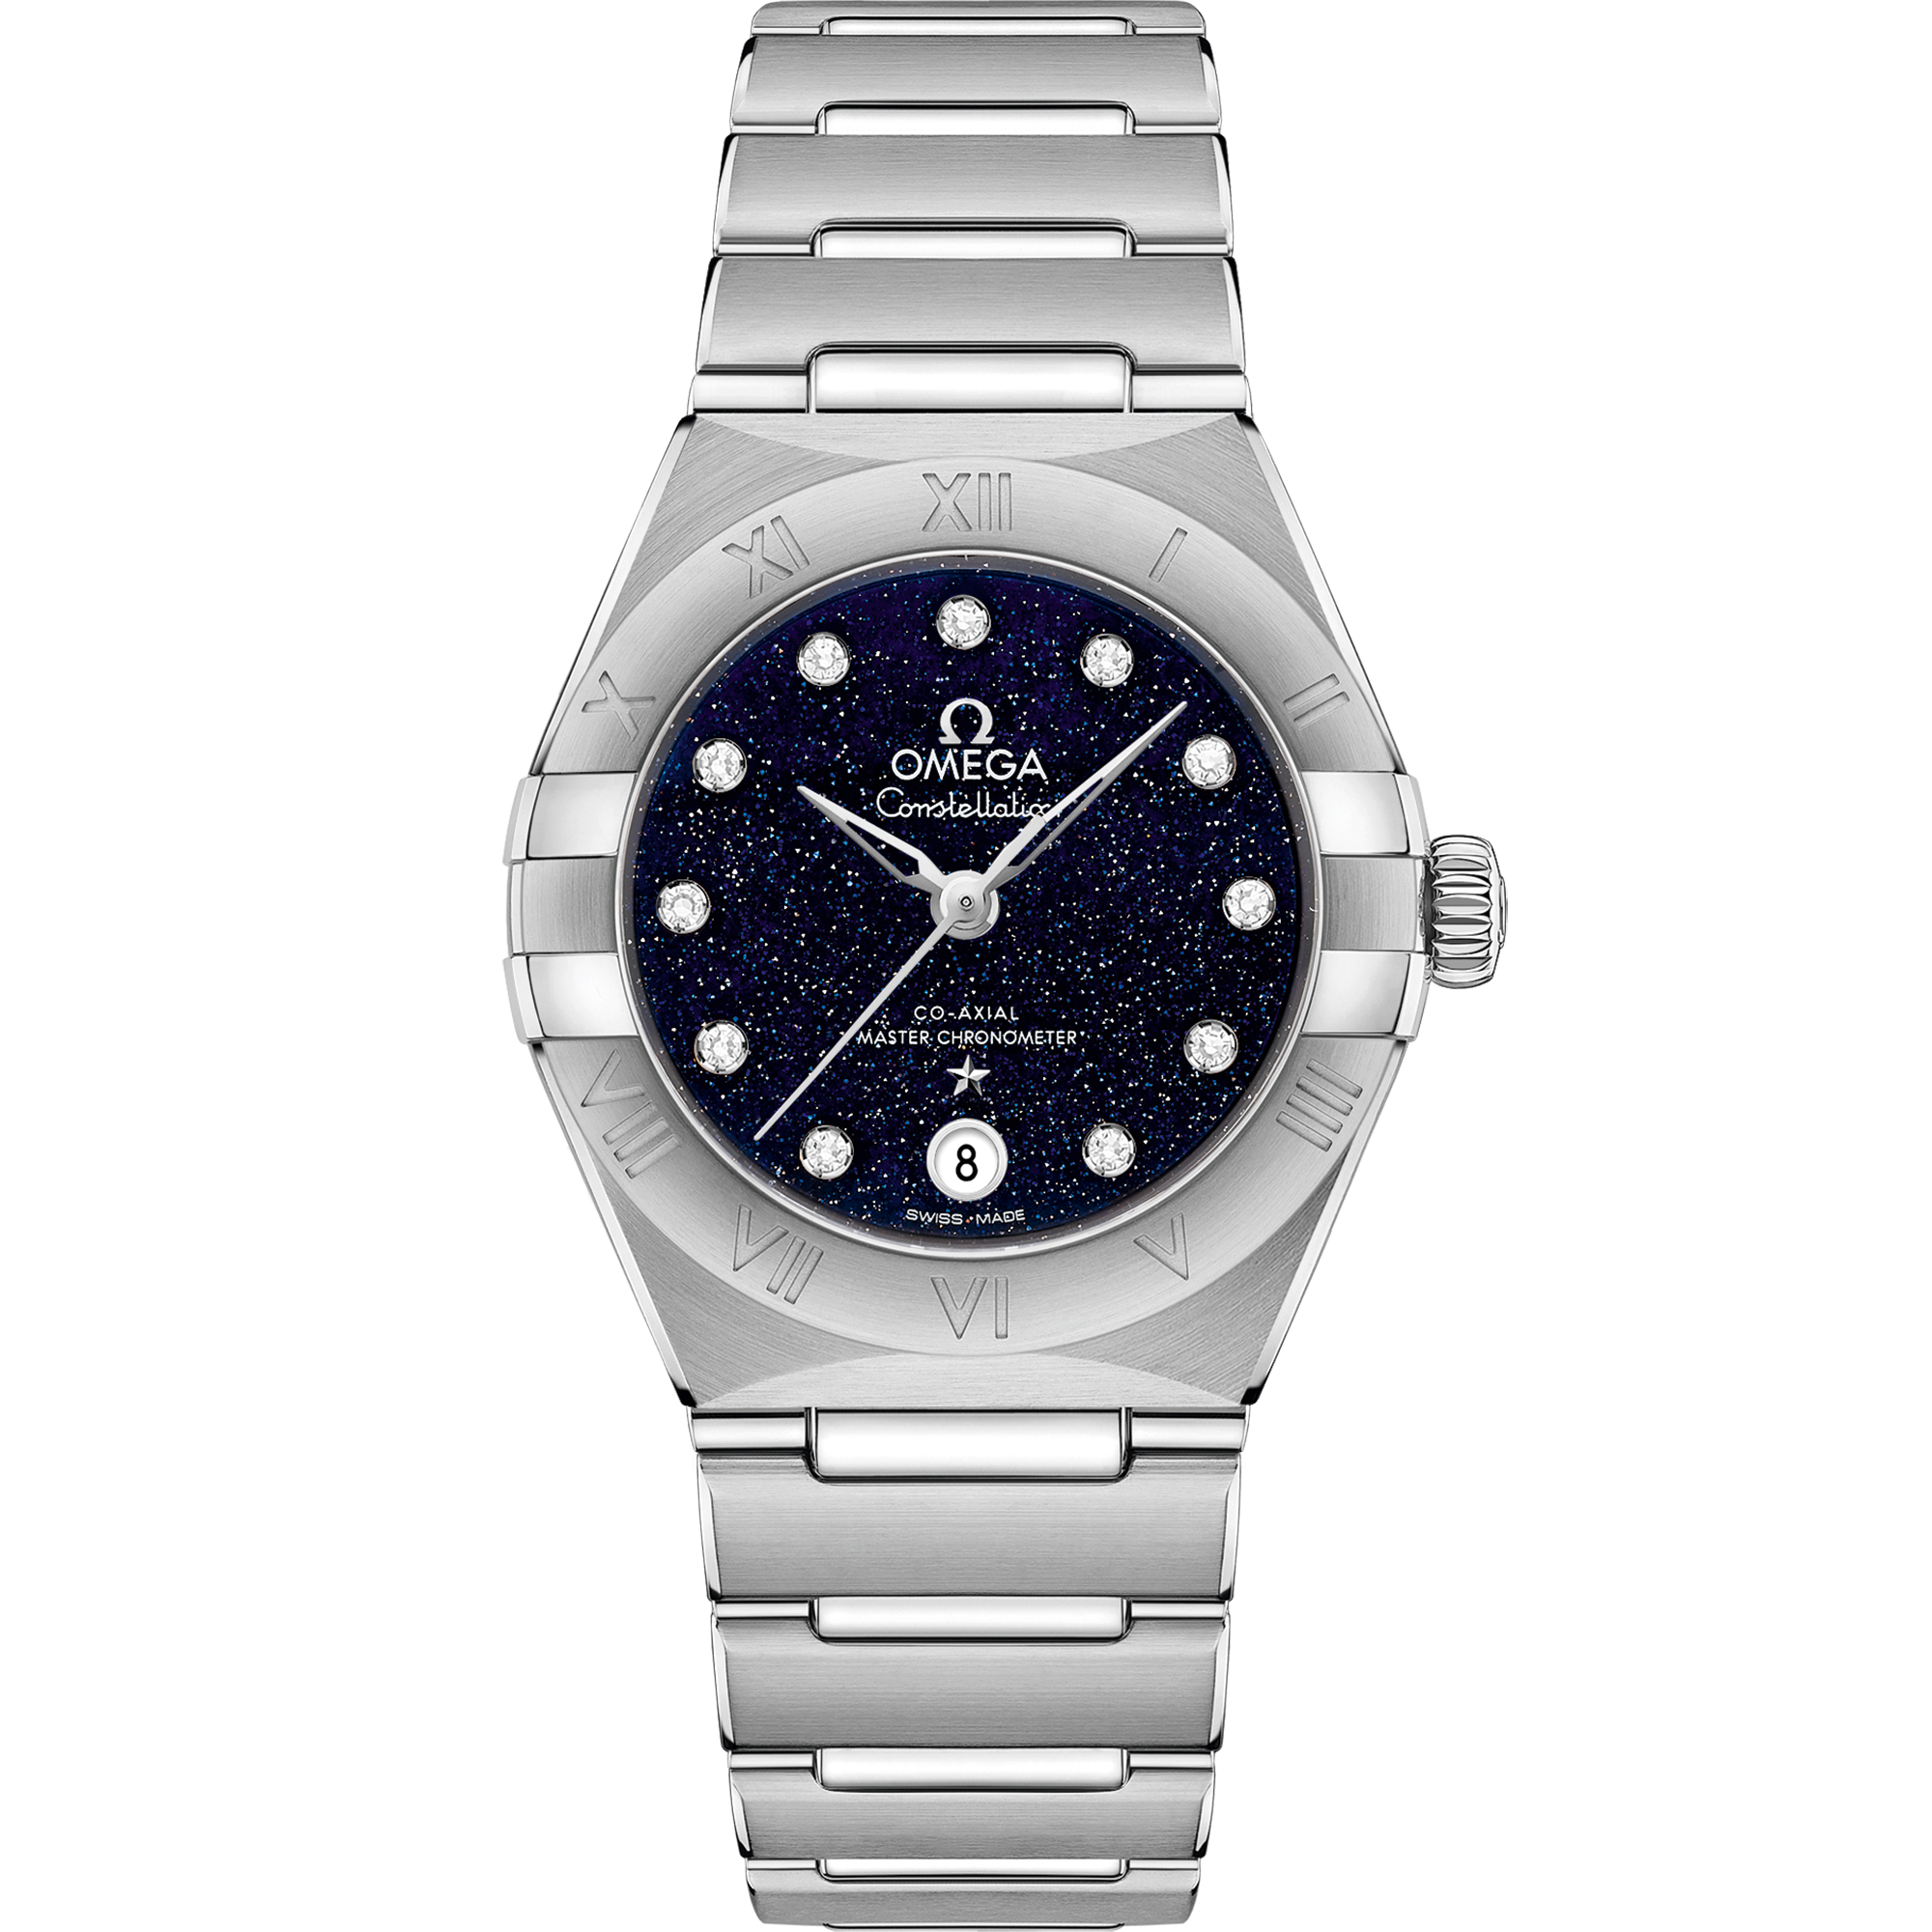 Orologio con quadrante Blu e cassa in Acciaio corredato di Constellation 29 mm, acciaio su acciaio - 131.10.29.20.53.001 - Acciaio bracelet